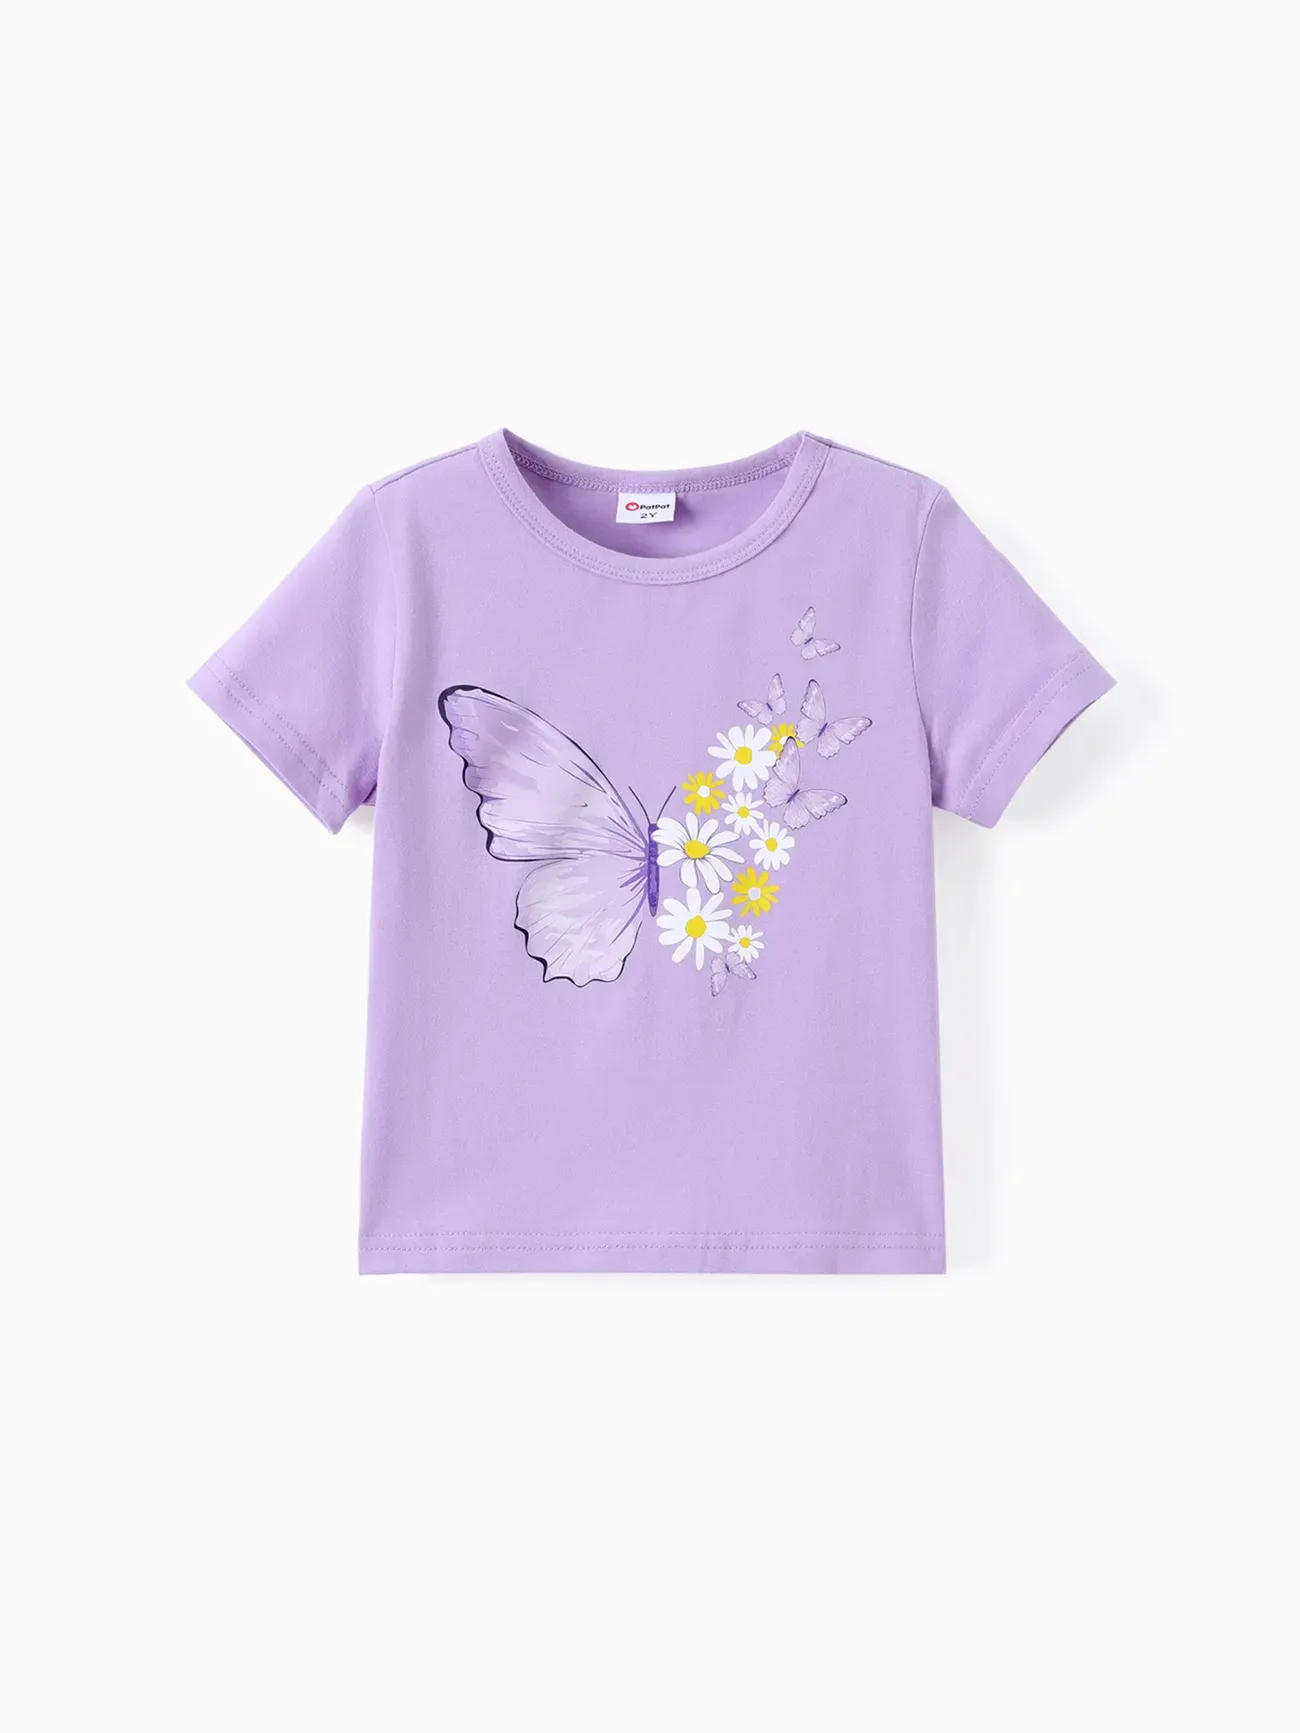 Toddler/Kid Girl 2pcs Tee Sweet Butterfly Print e Little Daisy Leggings Set Roxa big image 1